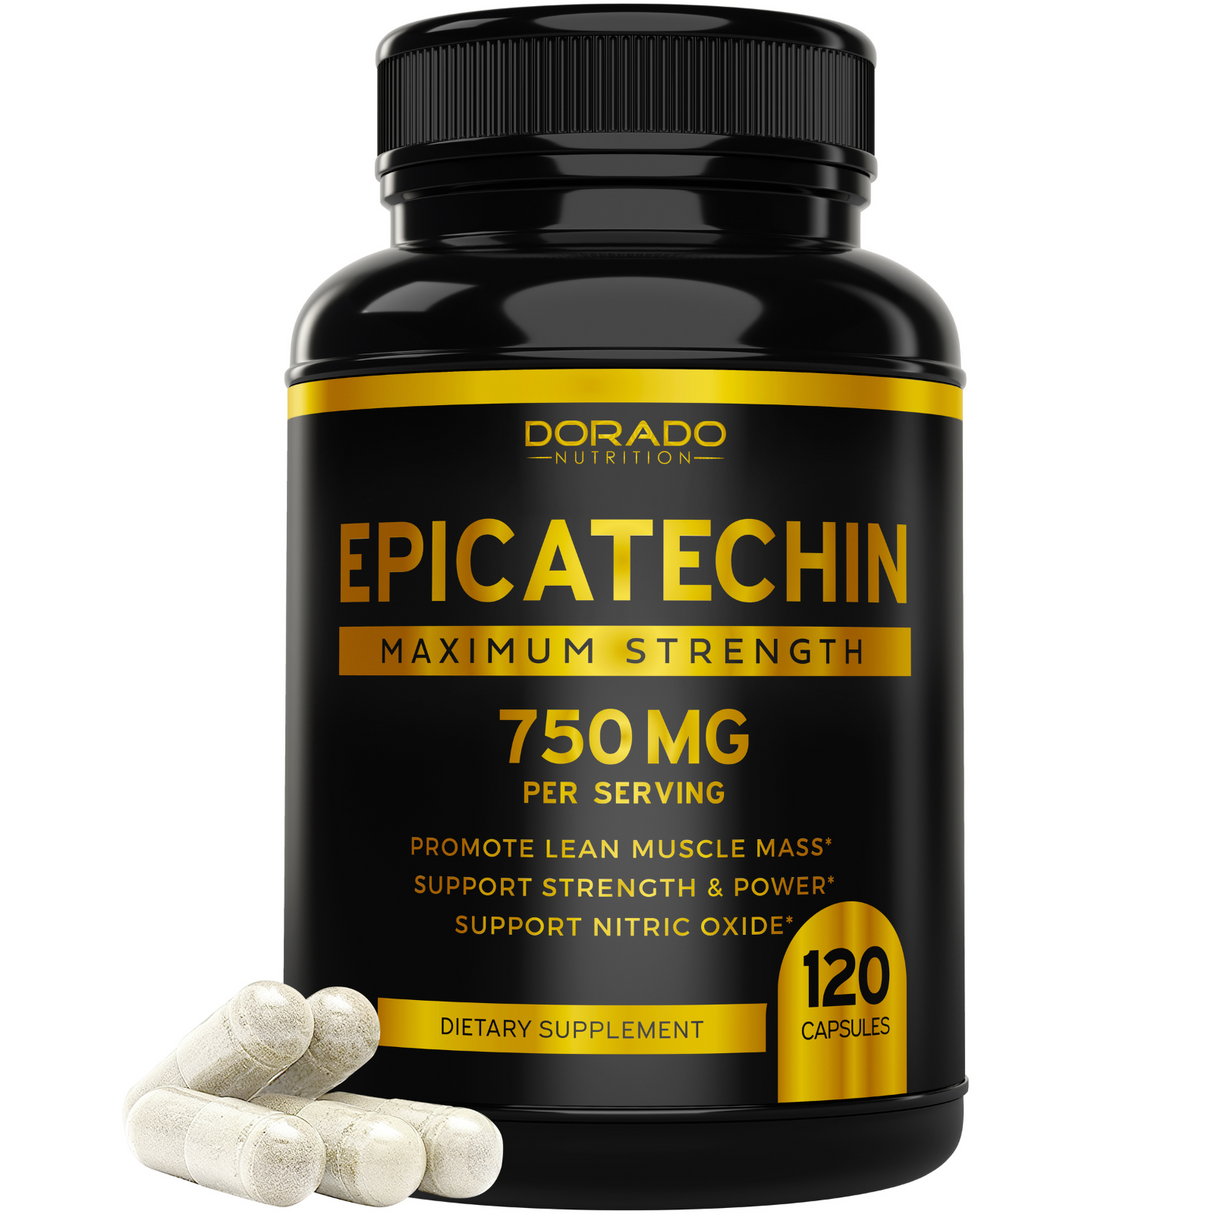 Epicatechin (750mg)